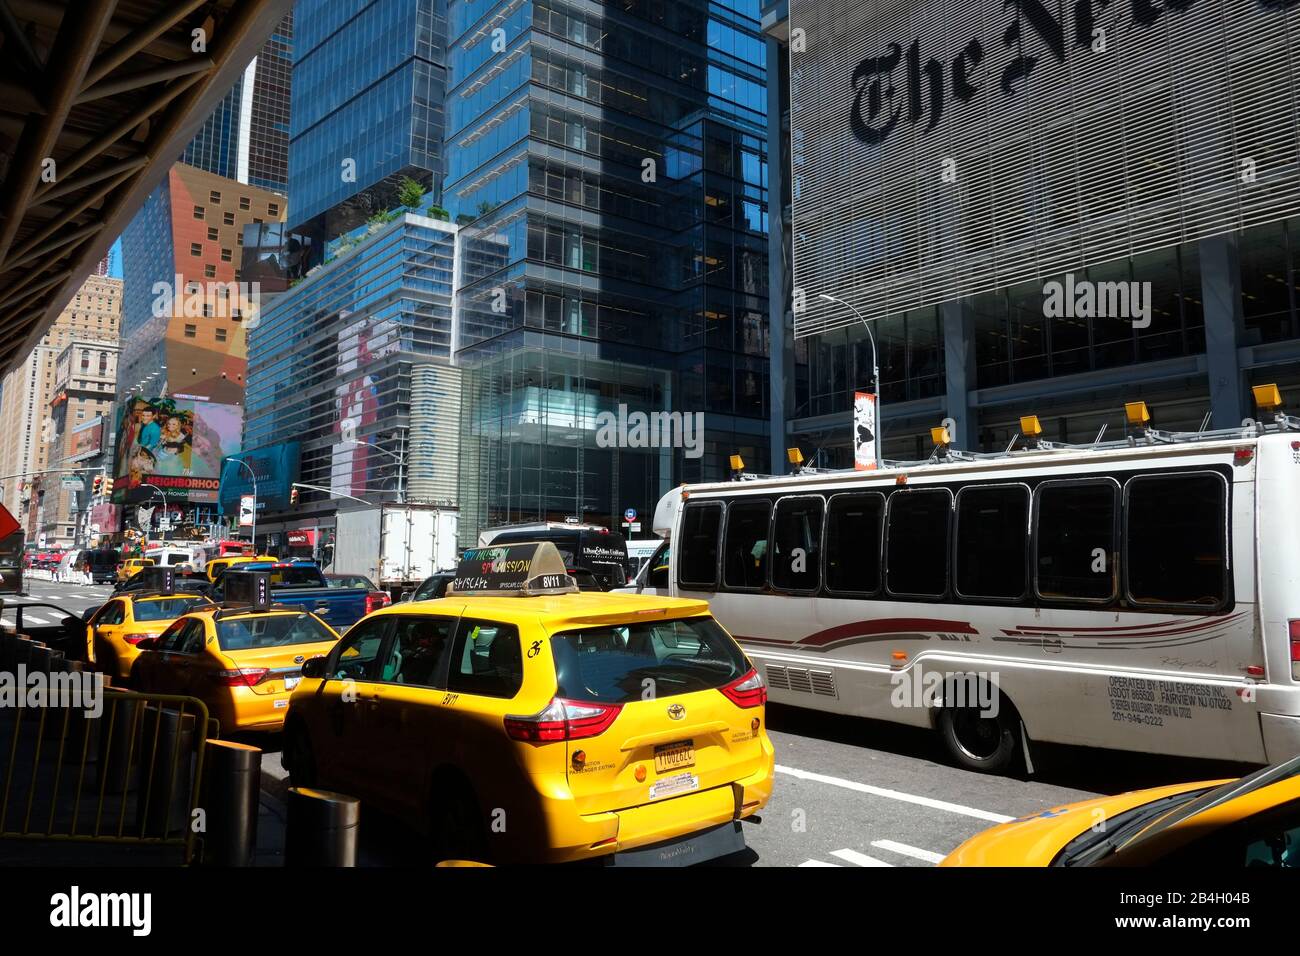 Taxi gialli in attesa di passeggeri al terminal degli autobus di Port Authority con la New York Times Tower progettata dall'architetto Renzo piano in background. 8th Avenue, New York, Stati Uniti Foto Stock